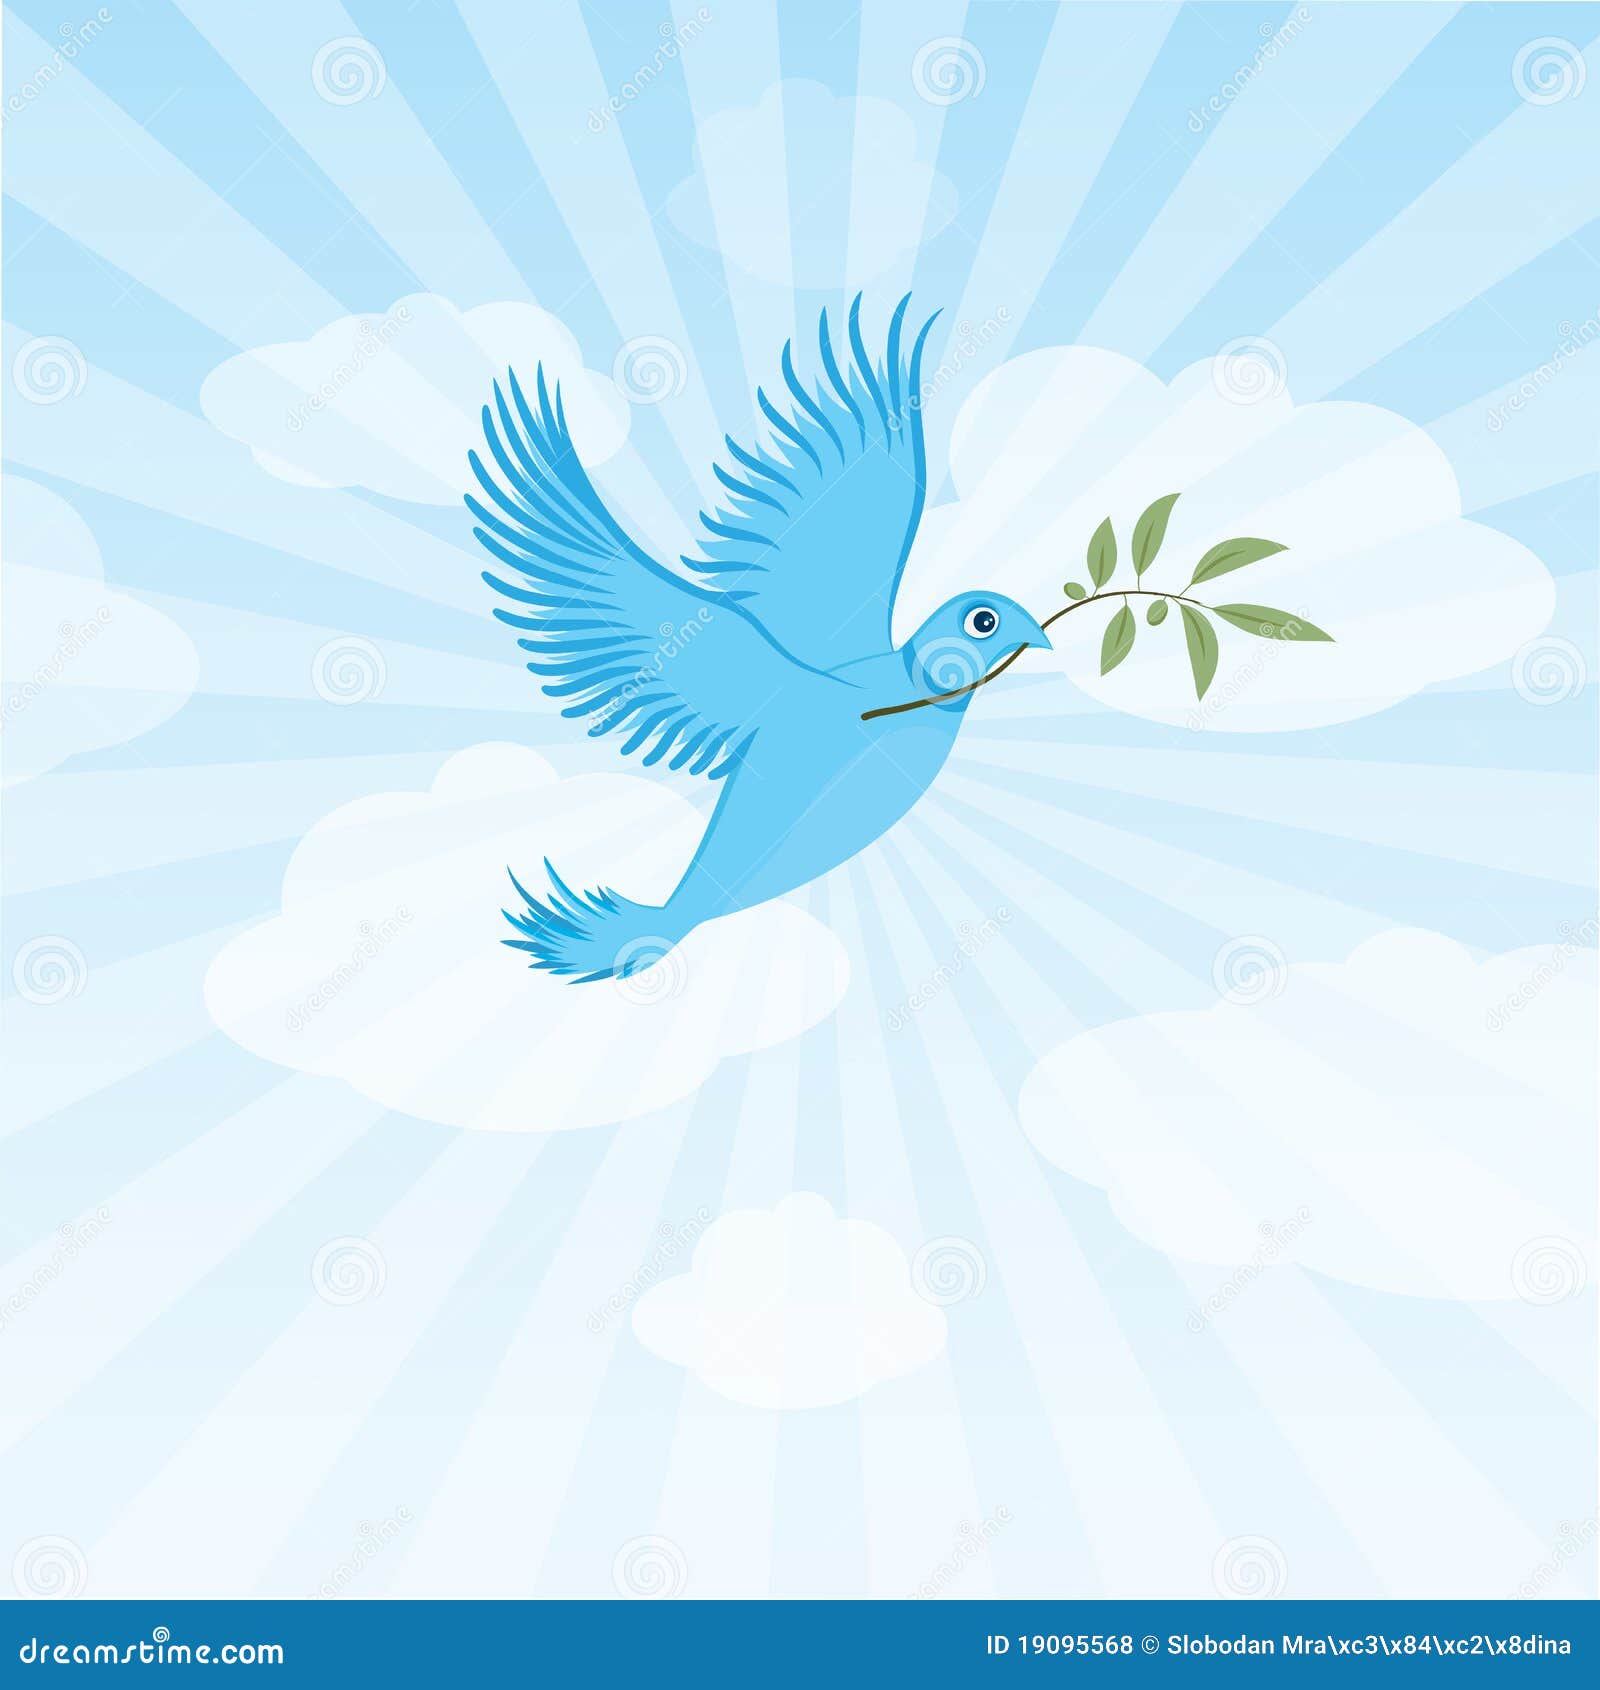 twitter bird - peace dove